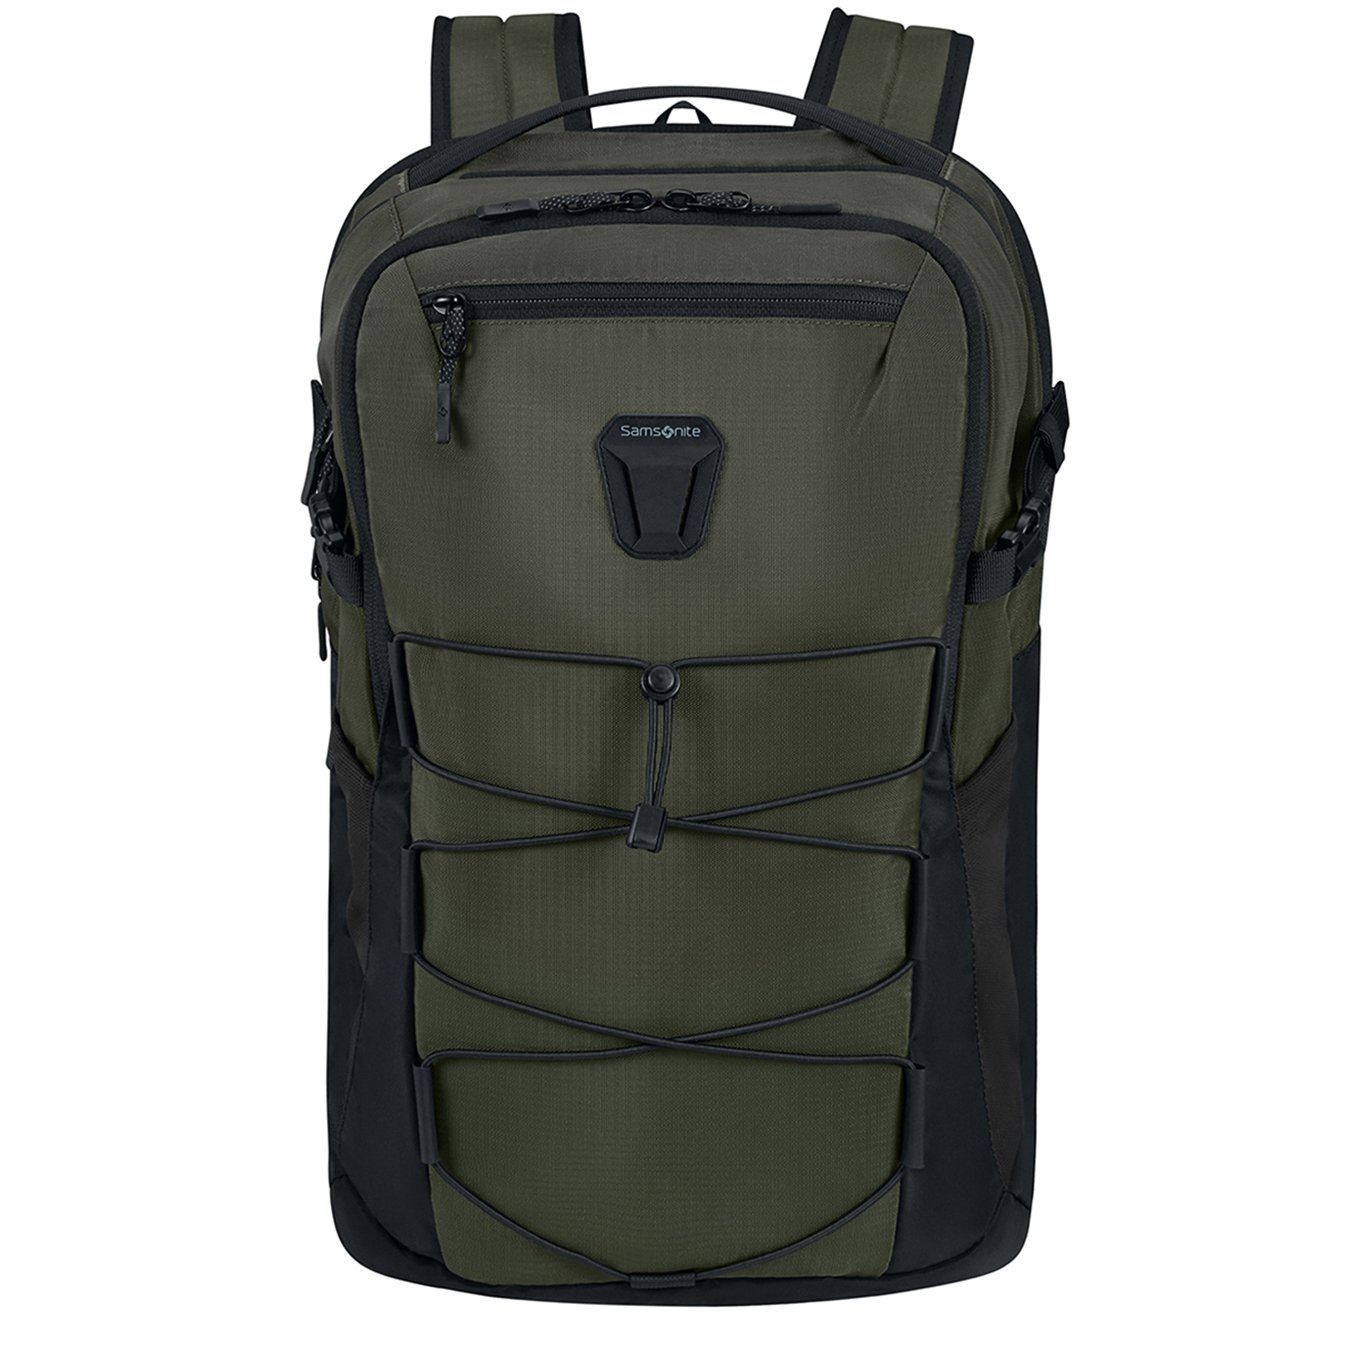 Samsonite Dye-Namic Backpack L 17.3" foliage green backpack